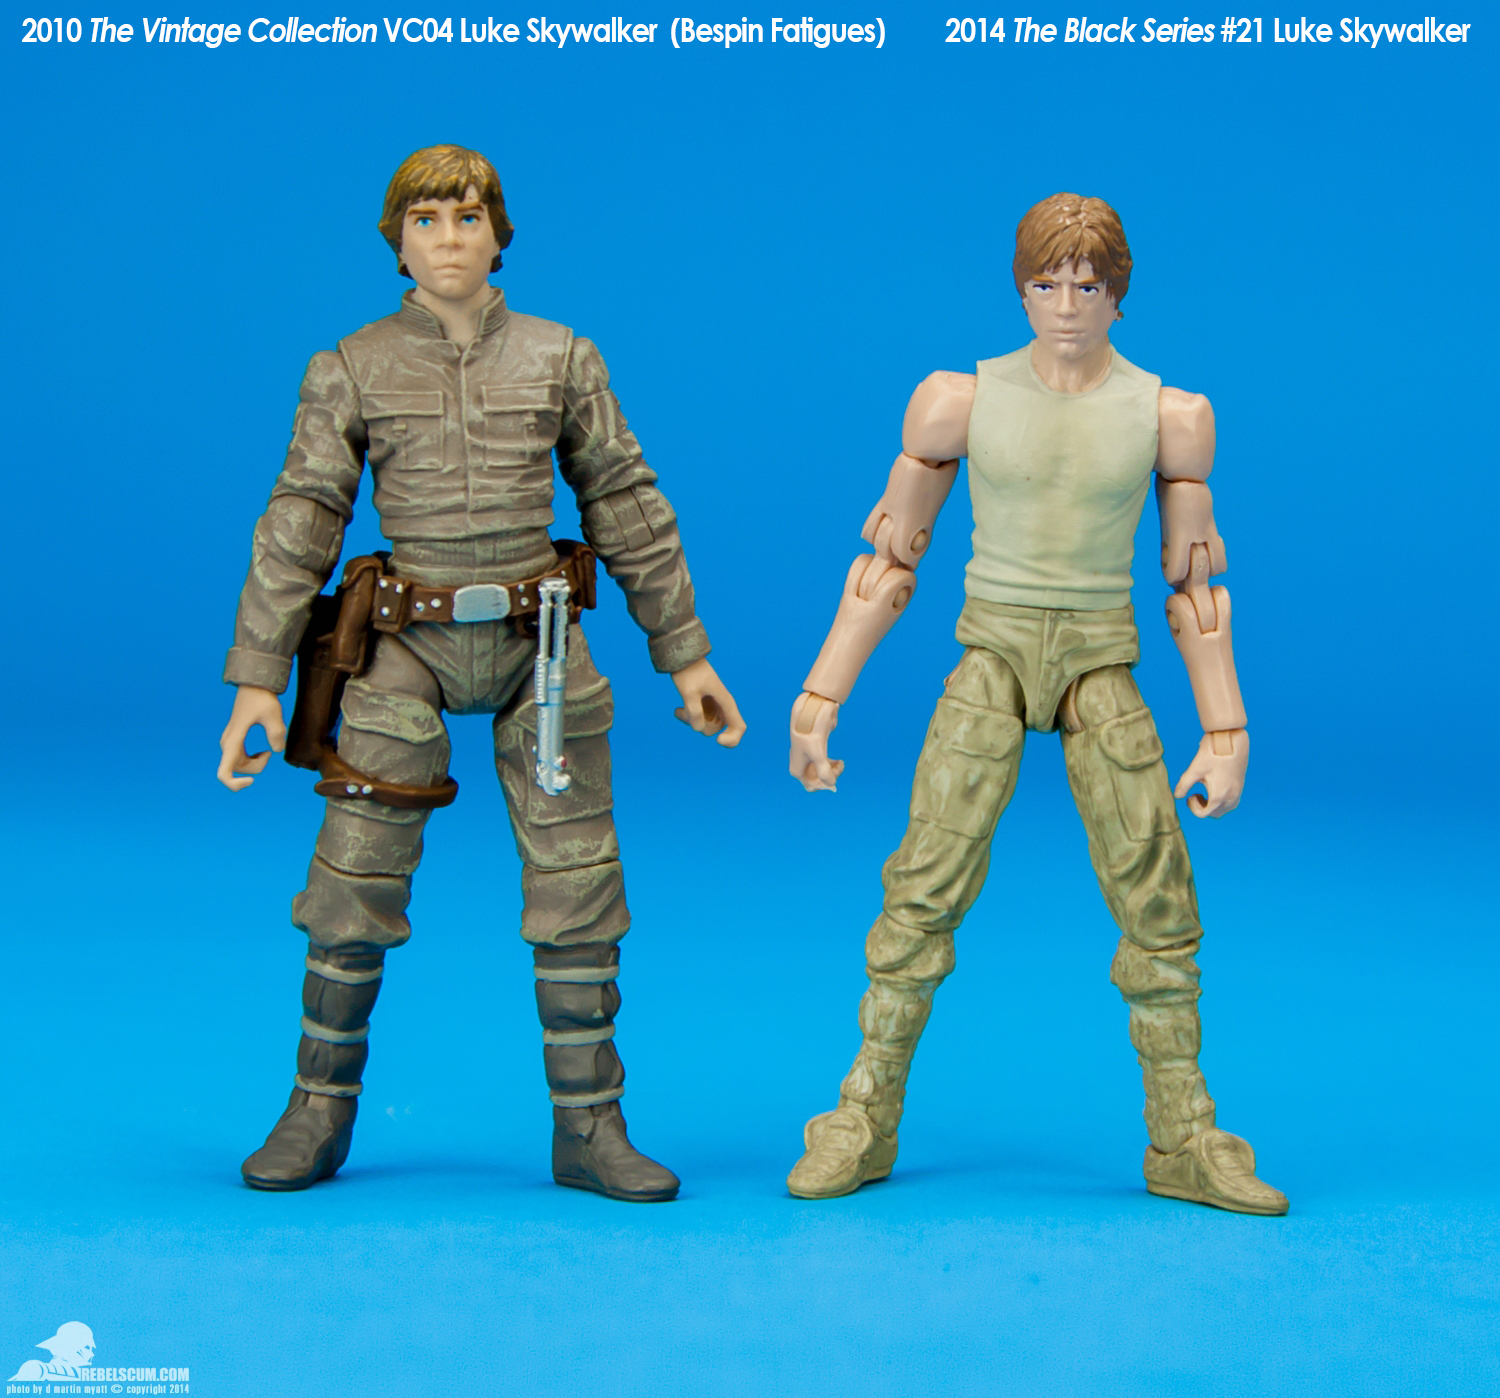 21-Luke-Skywalker-Dagobah-The-Black-Series-Hasbro-025.jpg